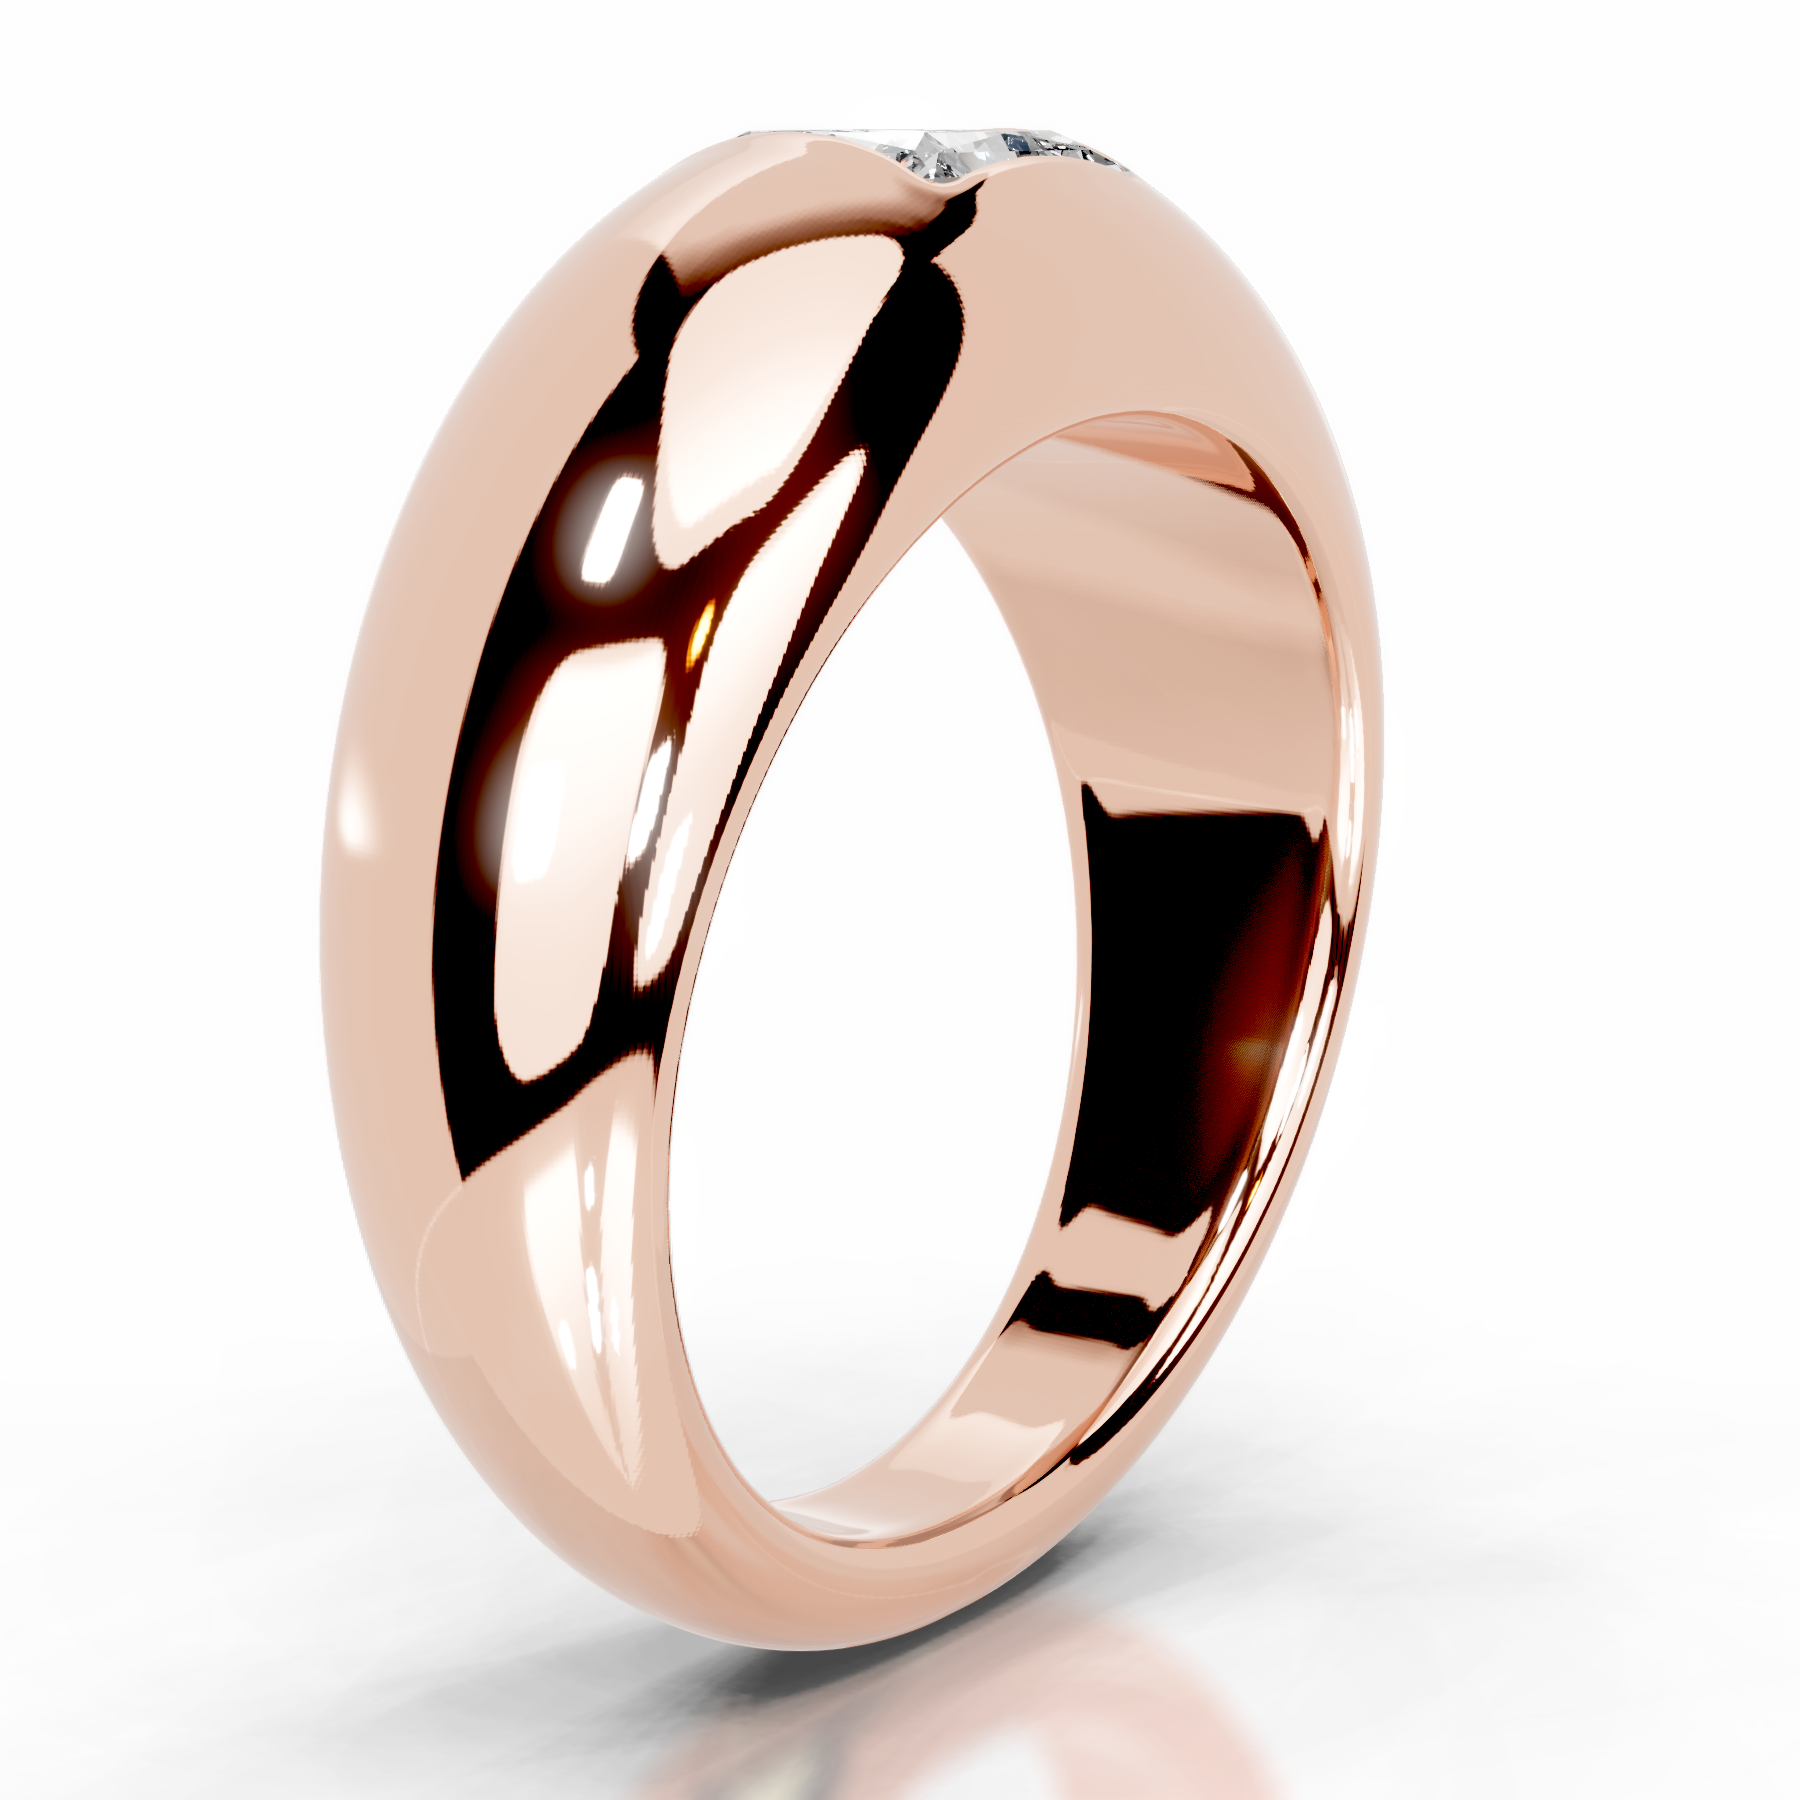 Aaliyah Lab Grown Diamond Ring   (1 Carat) -14K Rose Gold